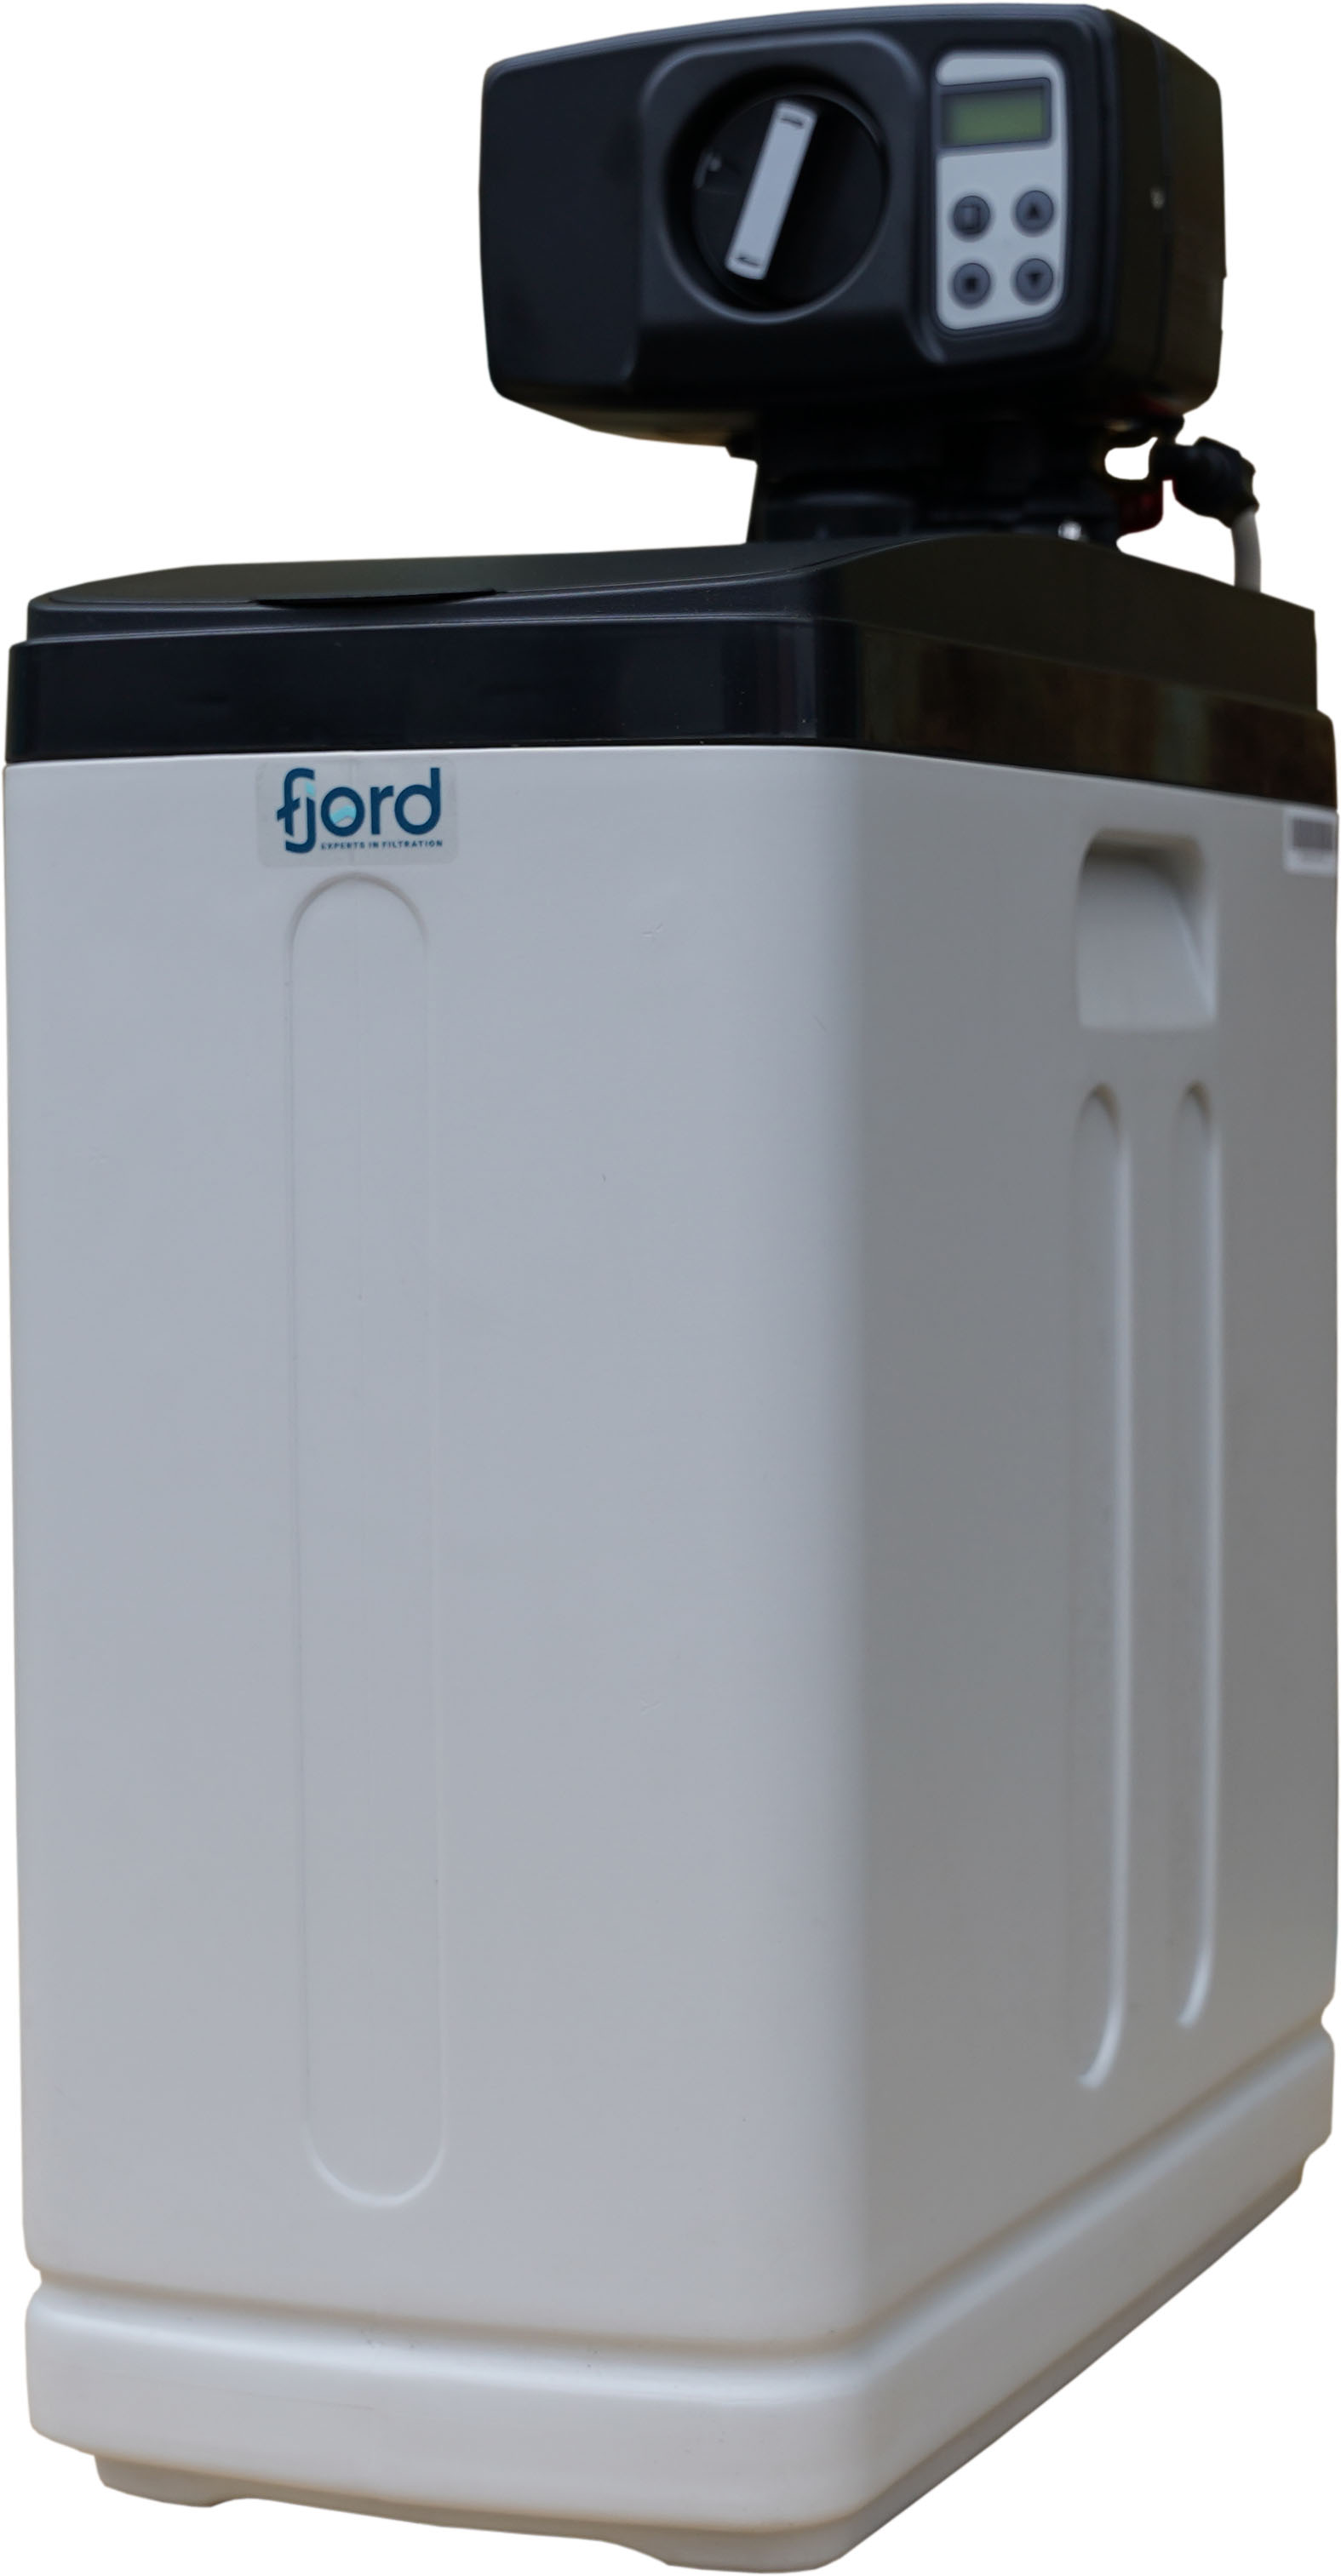 Фільтр для очищення води від марганцю Fjord Master FM-817 кабінет (комплексне очищення)